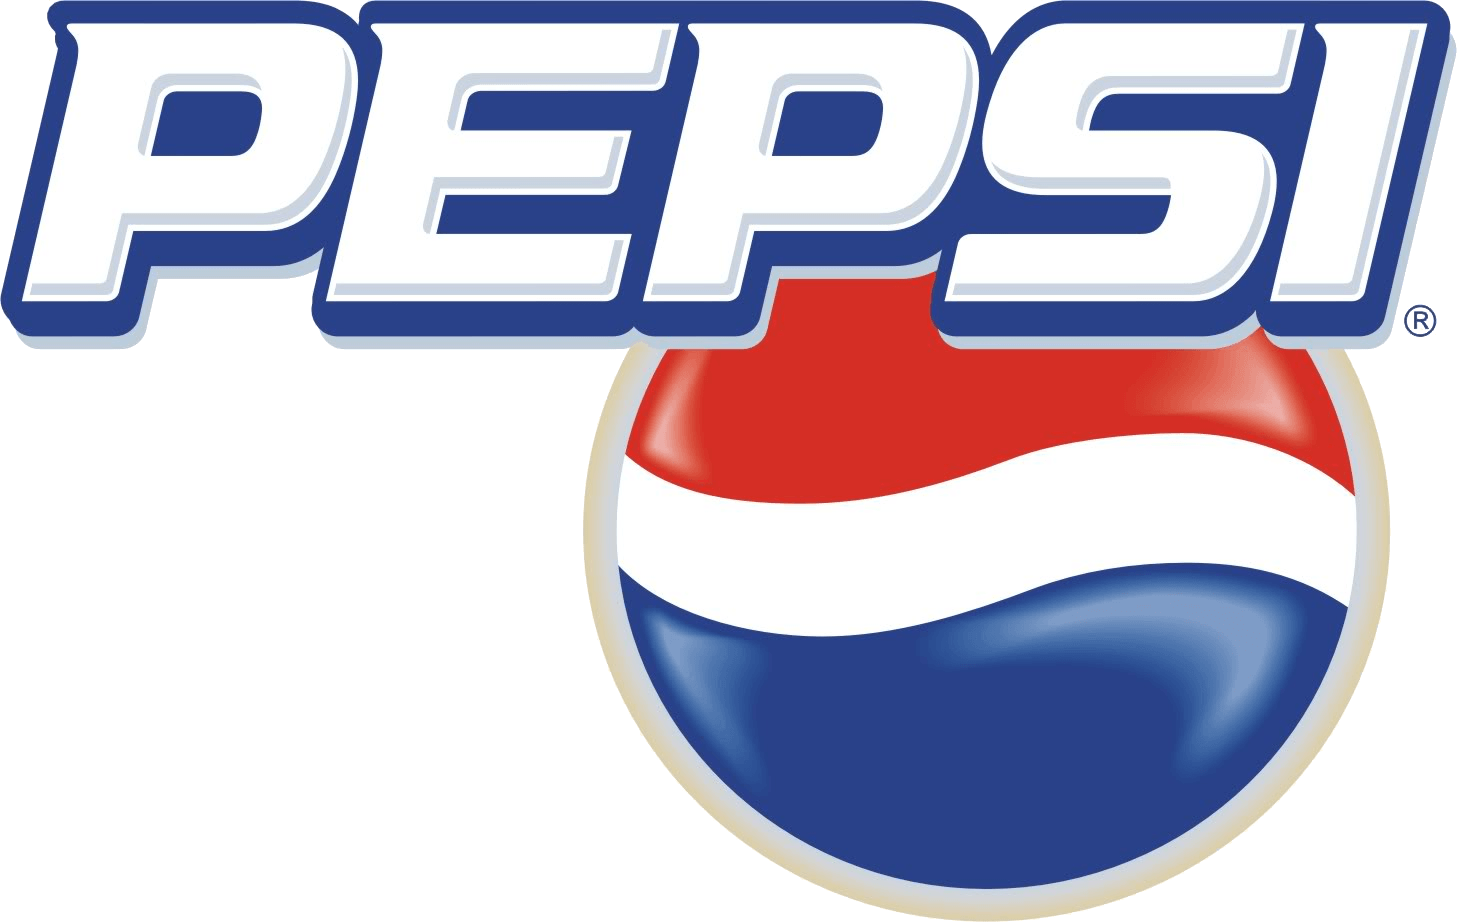 2003 Logo - Pepsi 2003 Logo Image Logo Png